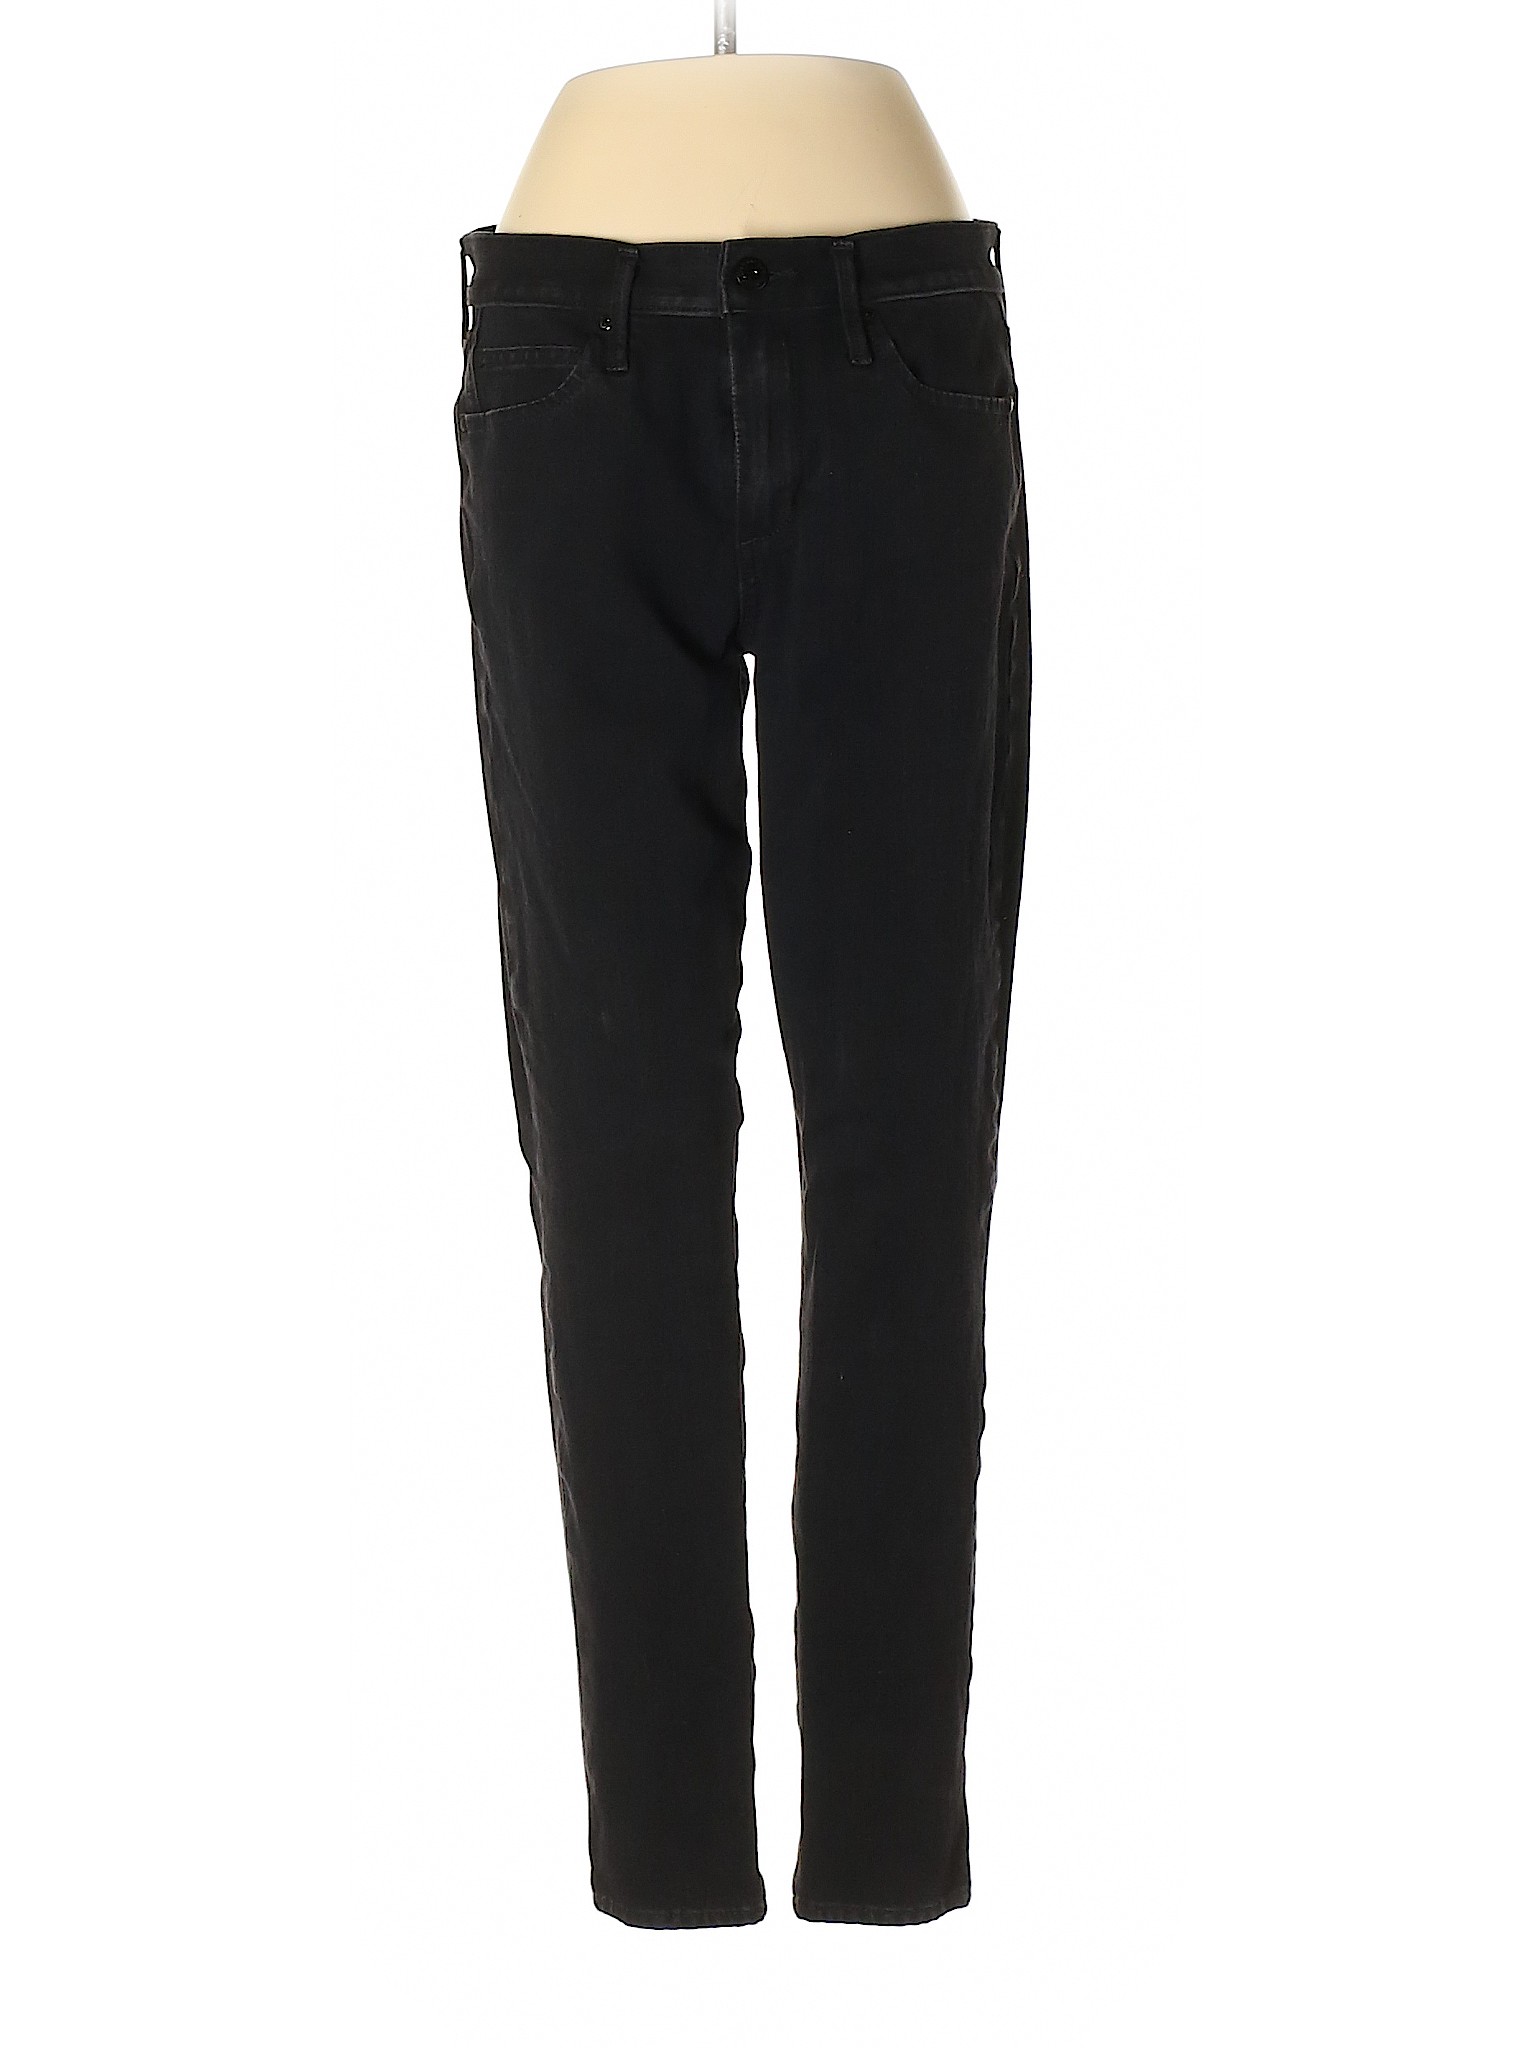 Gap Women Black Jeans 28W | eBay